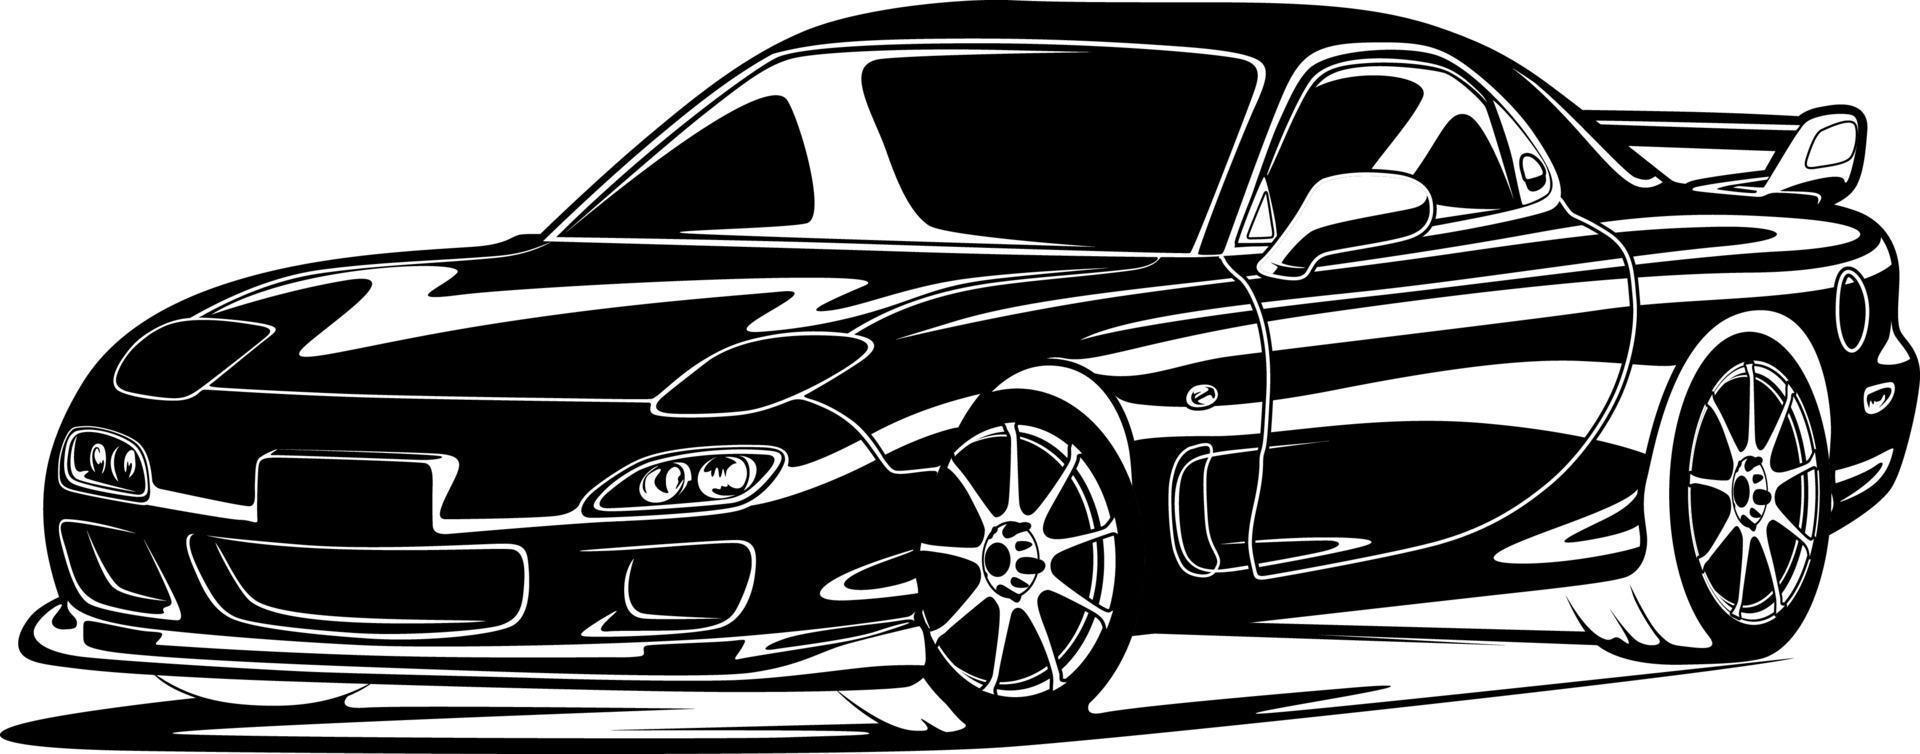 svart och vit bil vektorillustration för konceptuell design vektor